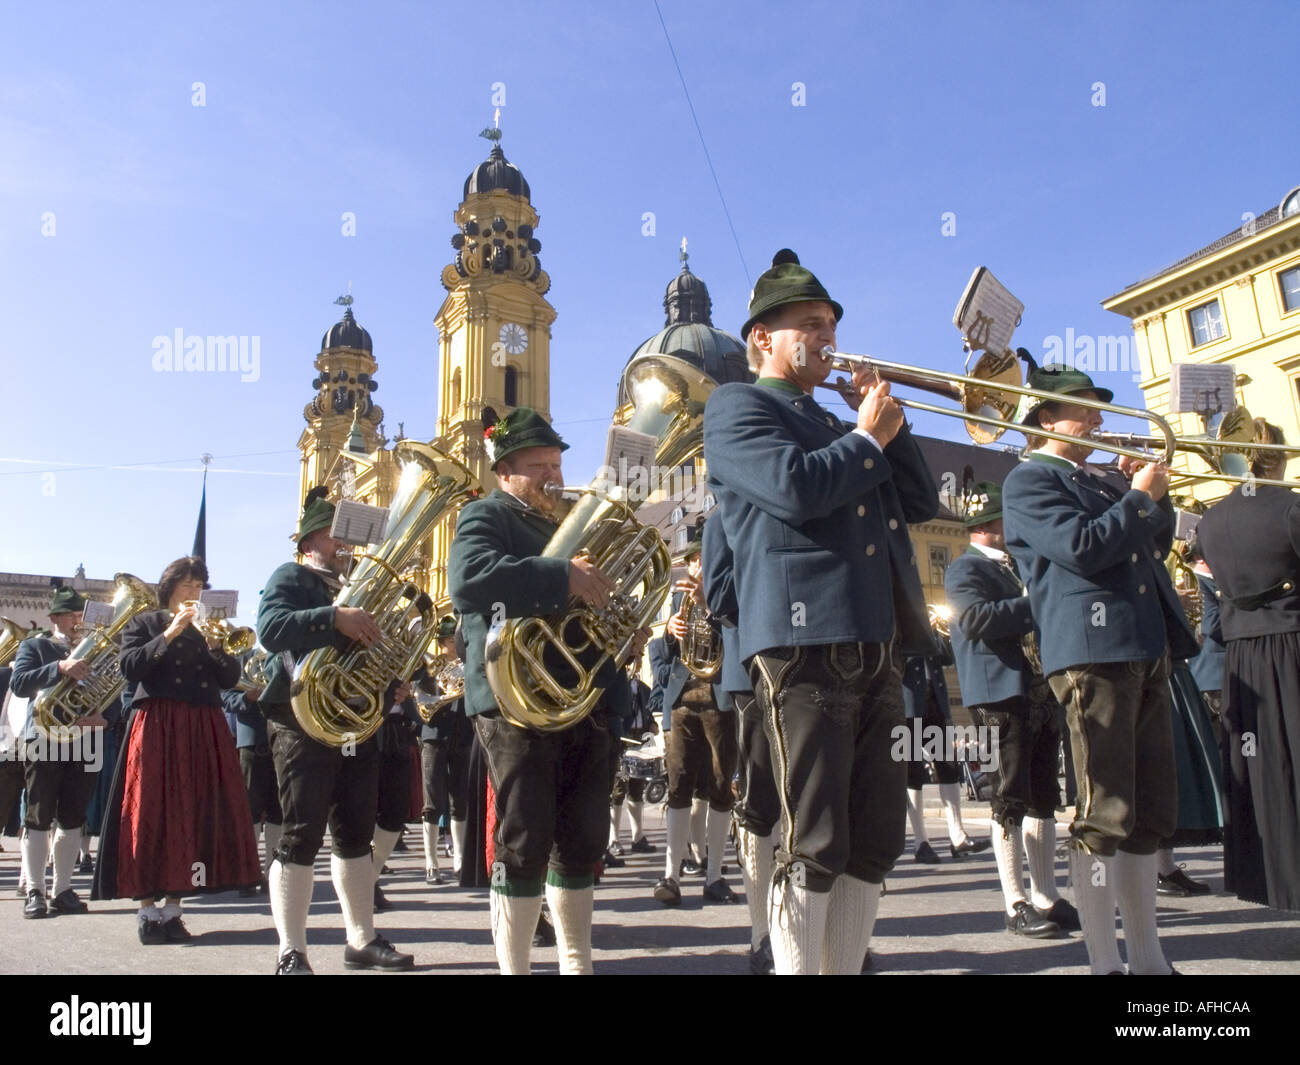 Europa Germania Monaco di Baviera - Festa della birra Oktoberfest coloratissima sfilata tradizionale si tengono ogni anno a Monaco di Baviera. Foto Stock